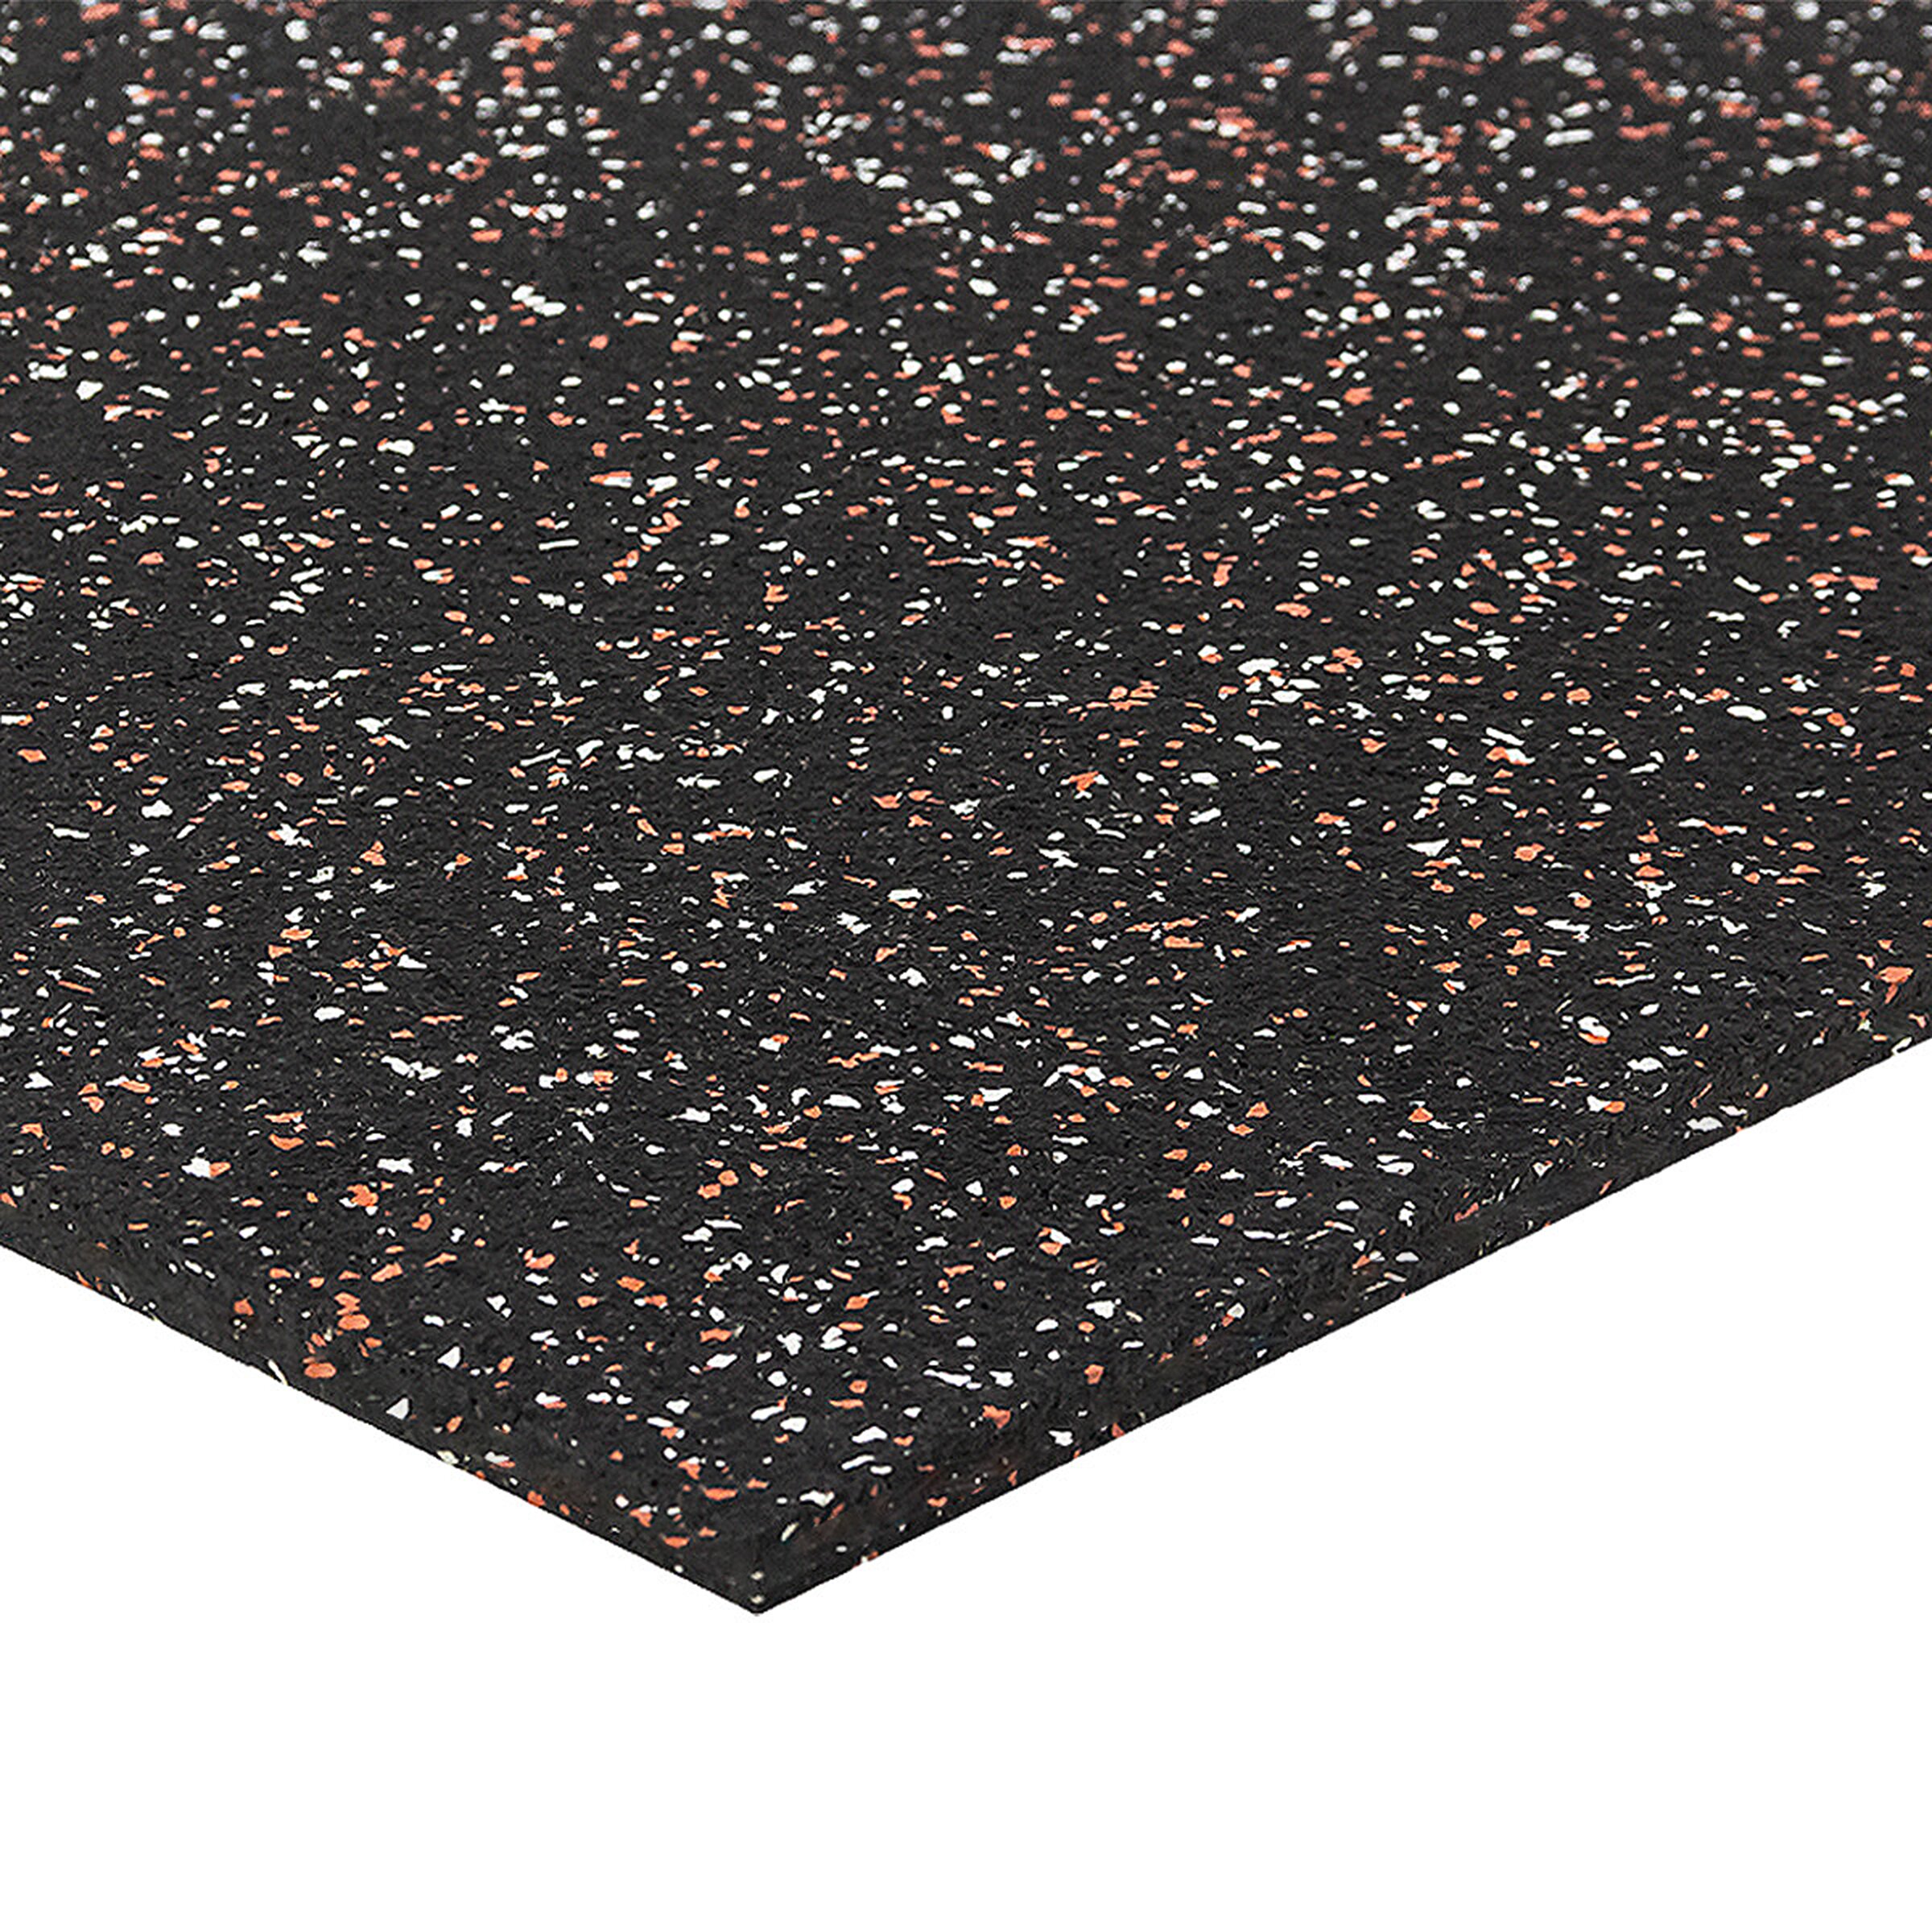 Černo-bílo-červená podlahová guma (puzzle - roh) FLOMA FitFlo SF1050 - délka 50 cm, šířka 50 cm, výška 1 cm